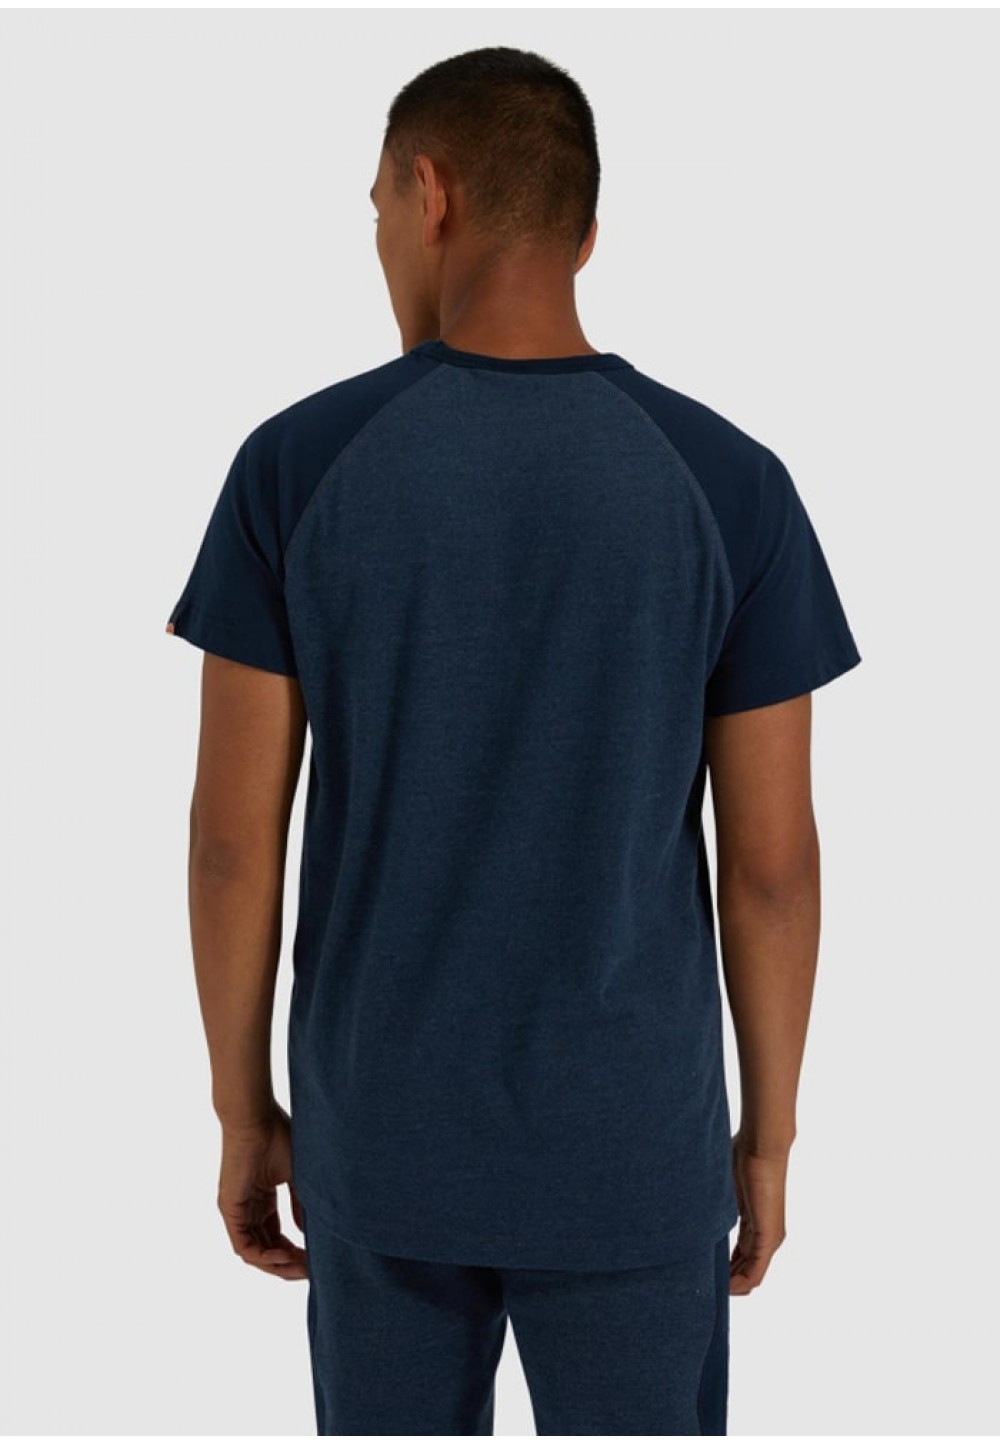 Стильная мужская футболка синего цвета